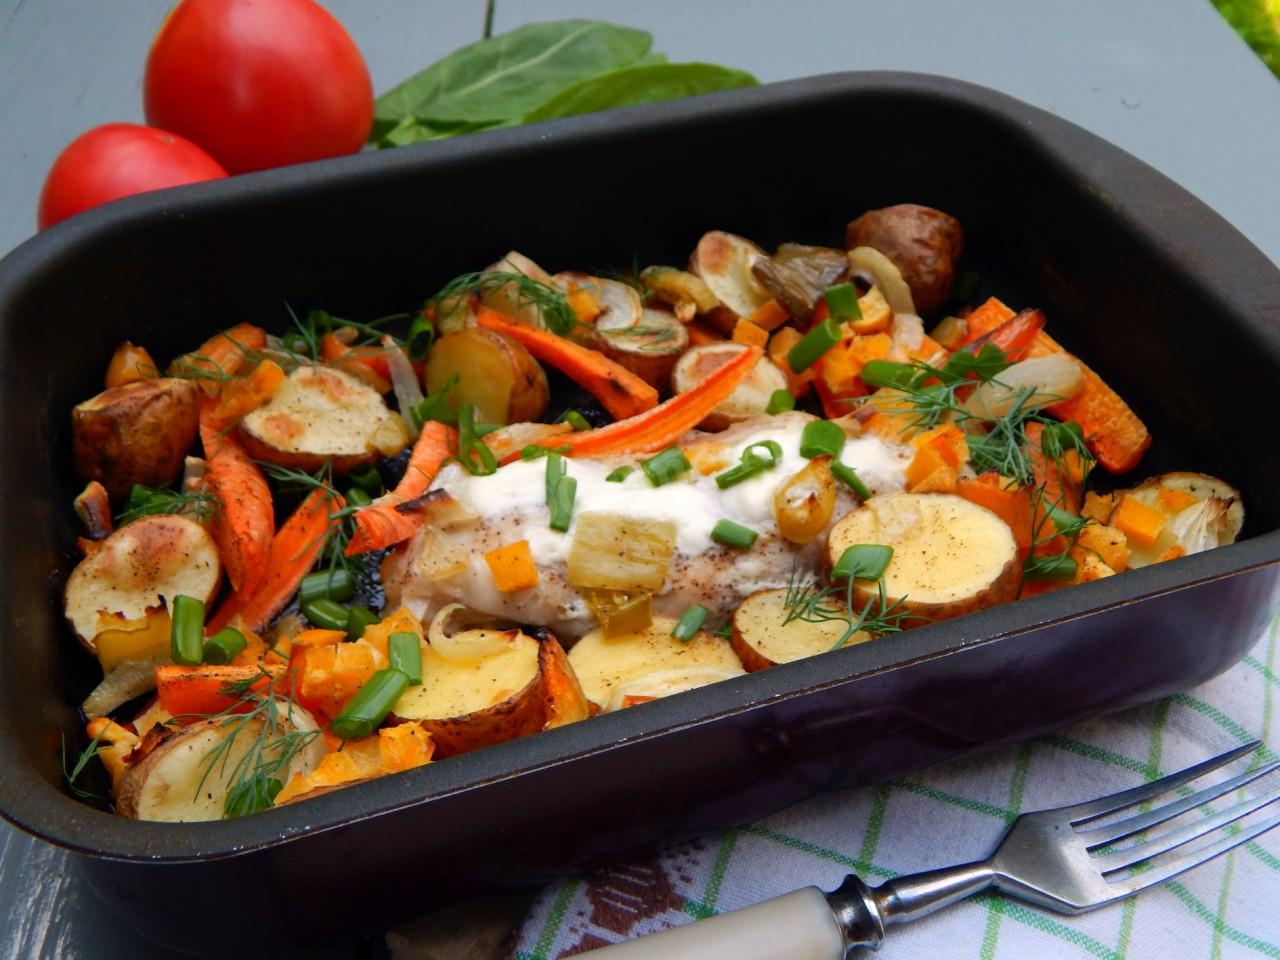 Рецепт грудки куриной с овощами на сковороде